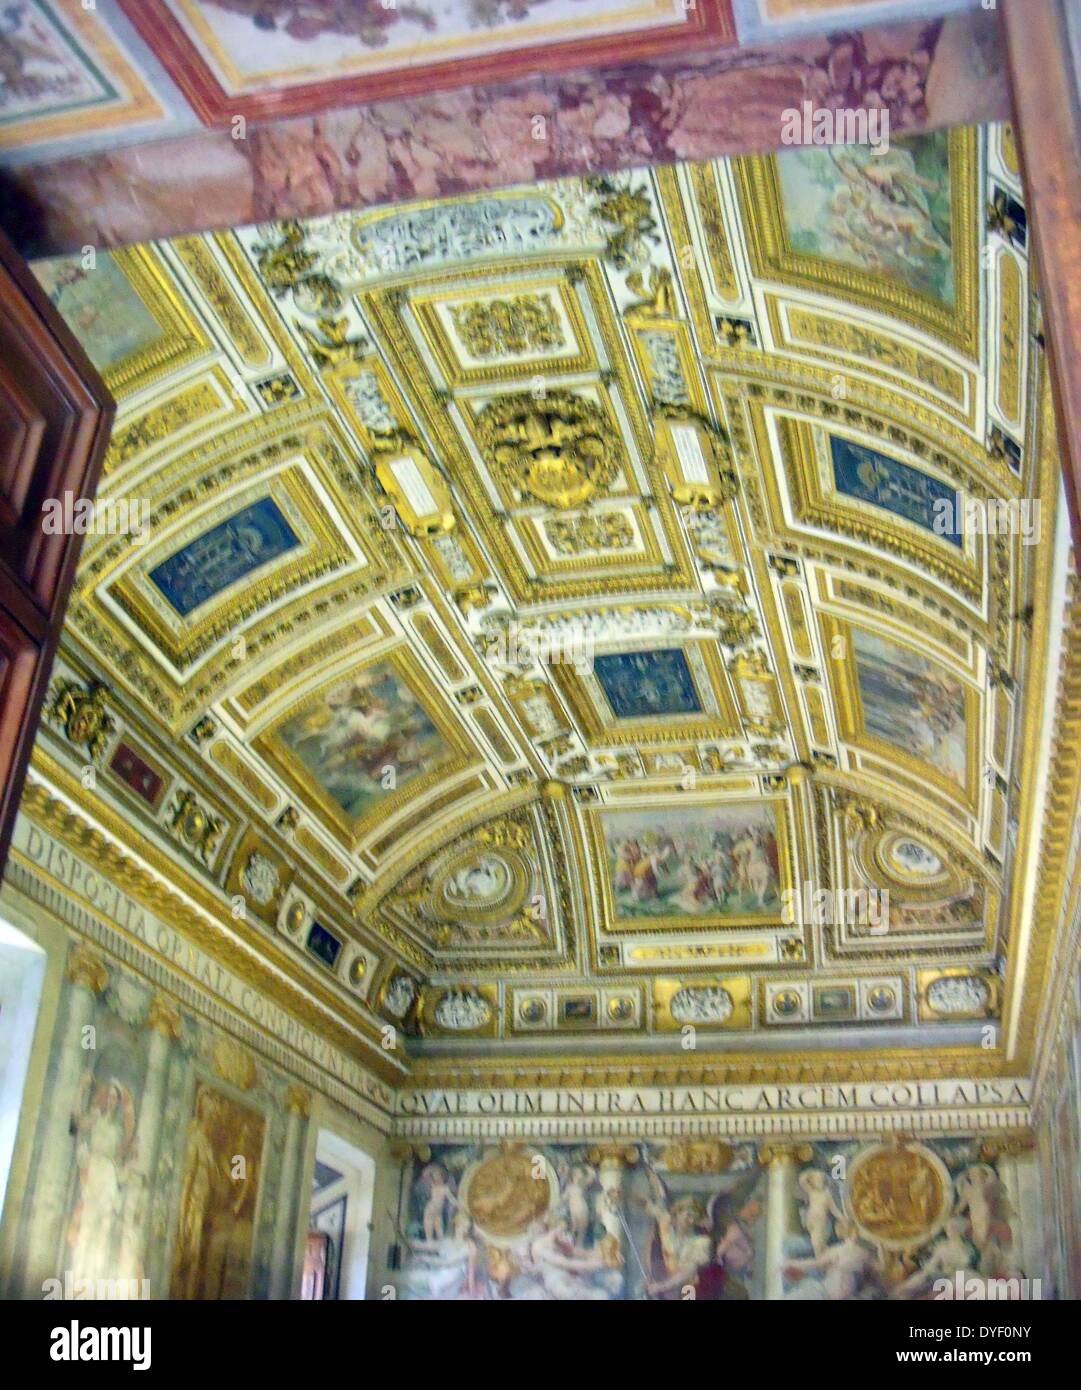 Die Vatikanischen Museen, eine riesige Sammlung der klassischen Detail, Renaissance Meisterwerke etc., die im frühen 16. Jahrhundert von Papst Julius II. gegründet werden Sie als, einige der größten Museen der Welt. Dieses Bild zeigt einen Teil der wunderschön bemalten Decke. Stockfoto